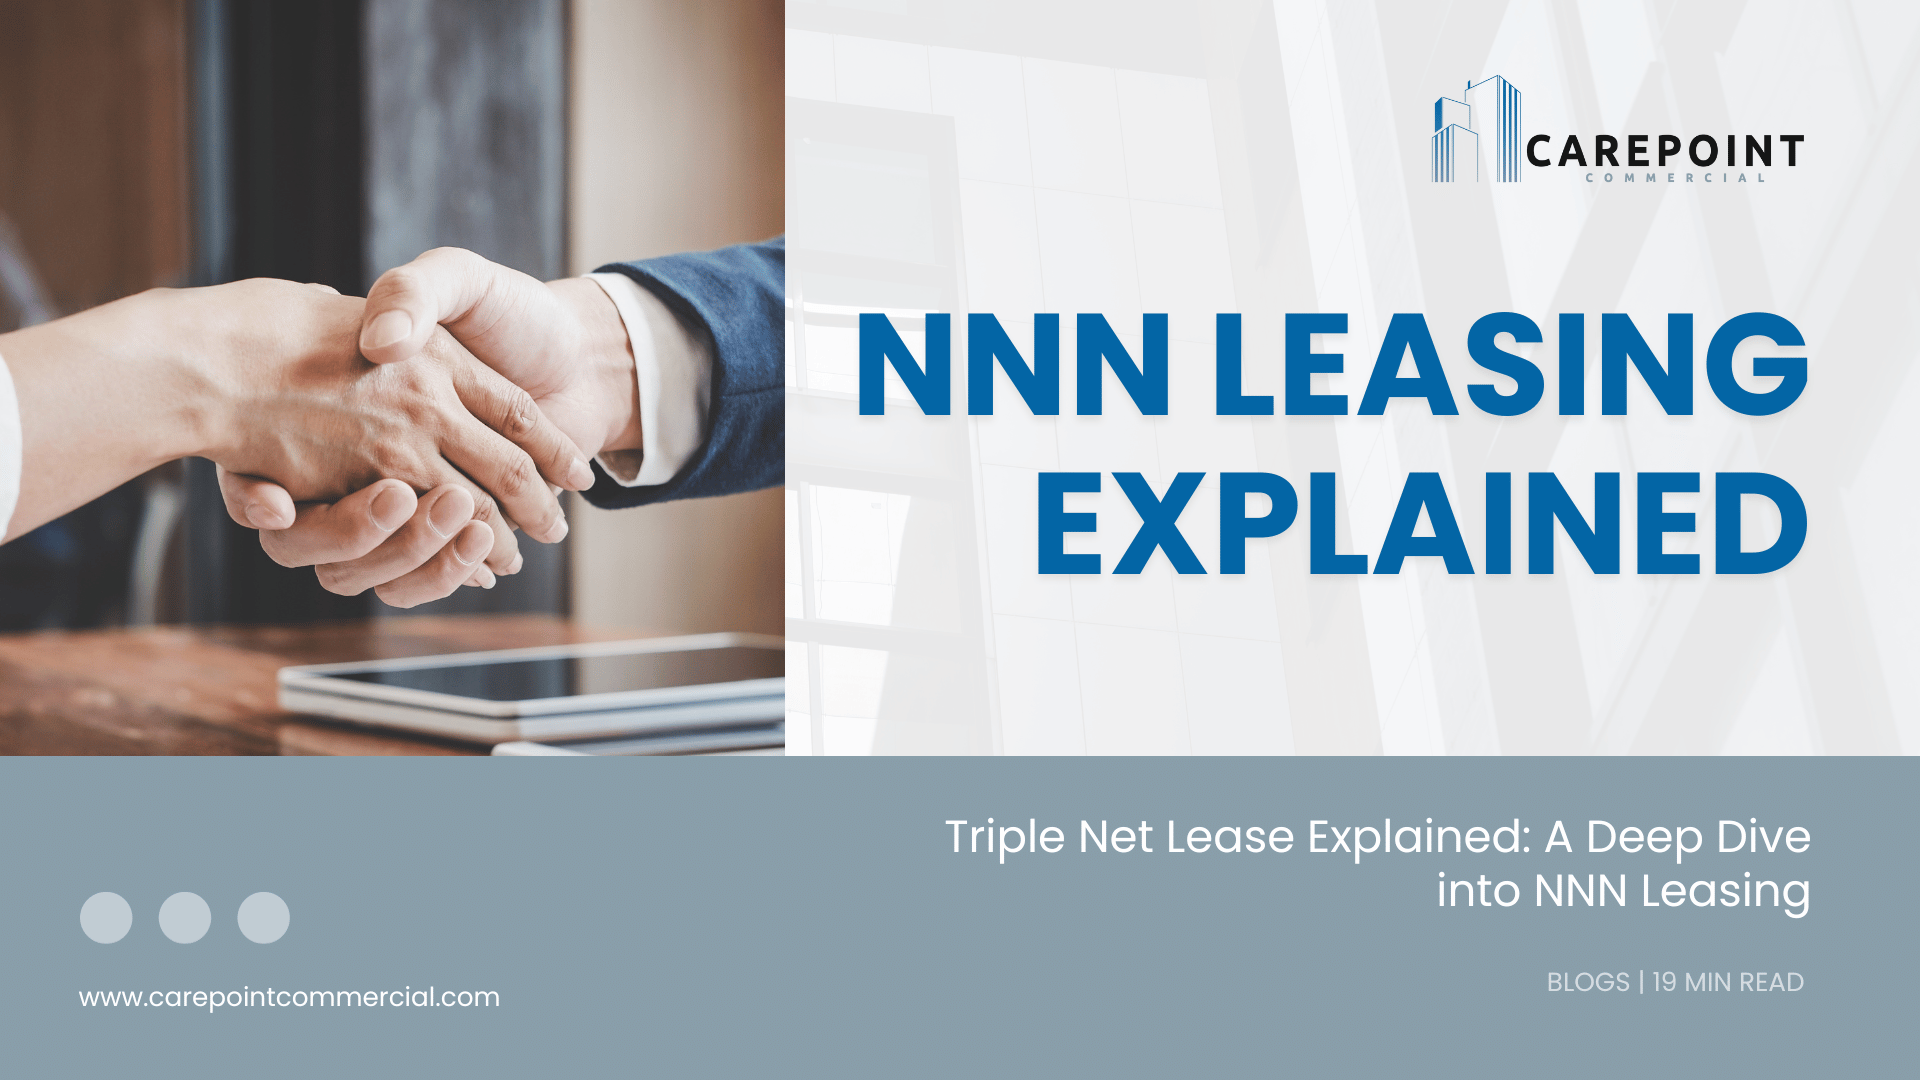 NNN leasing explained